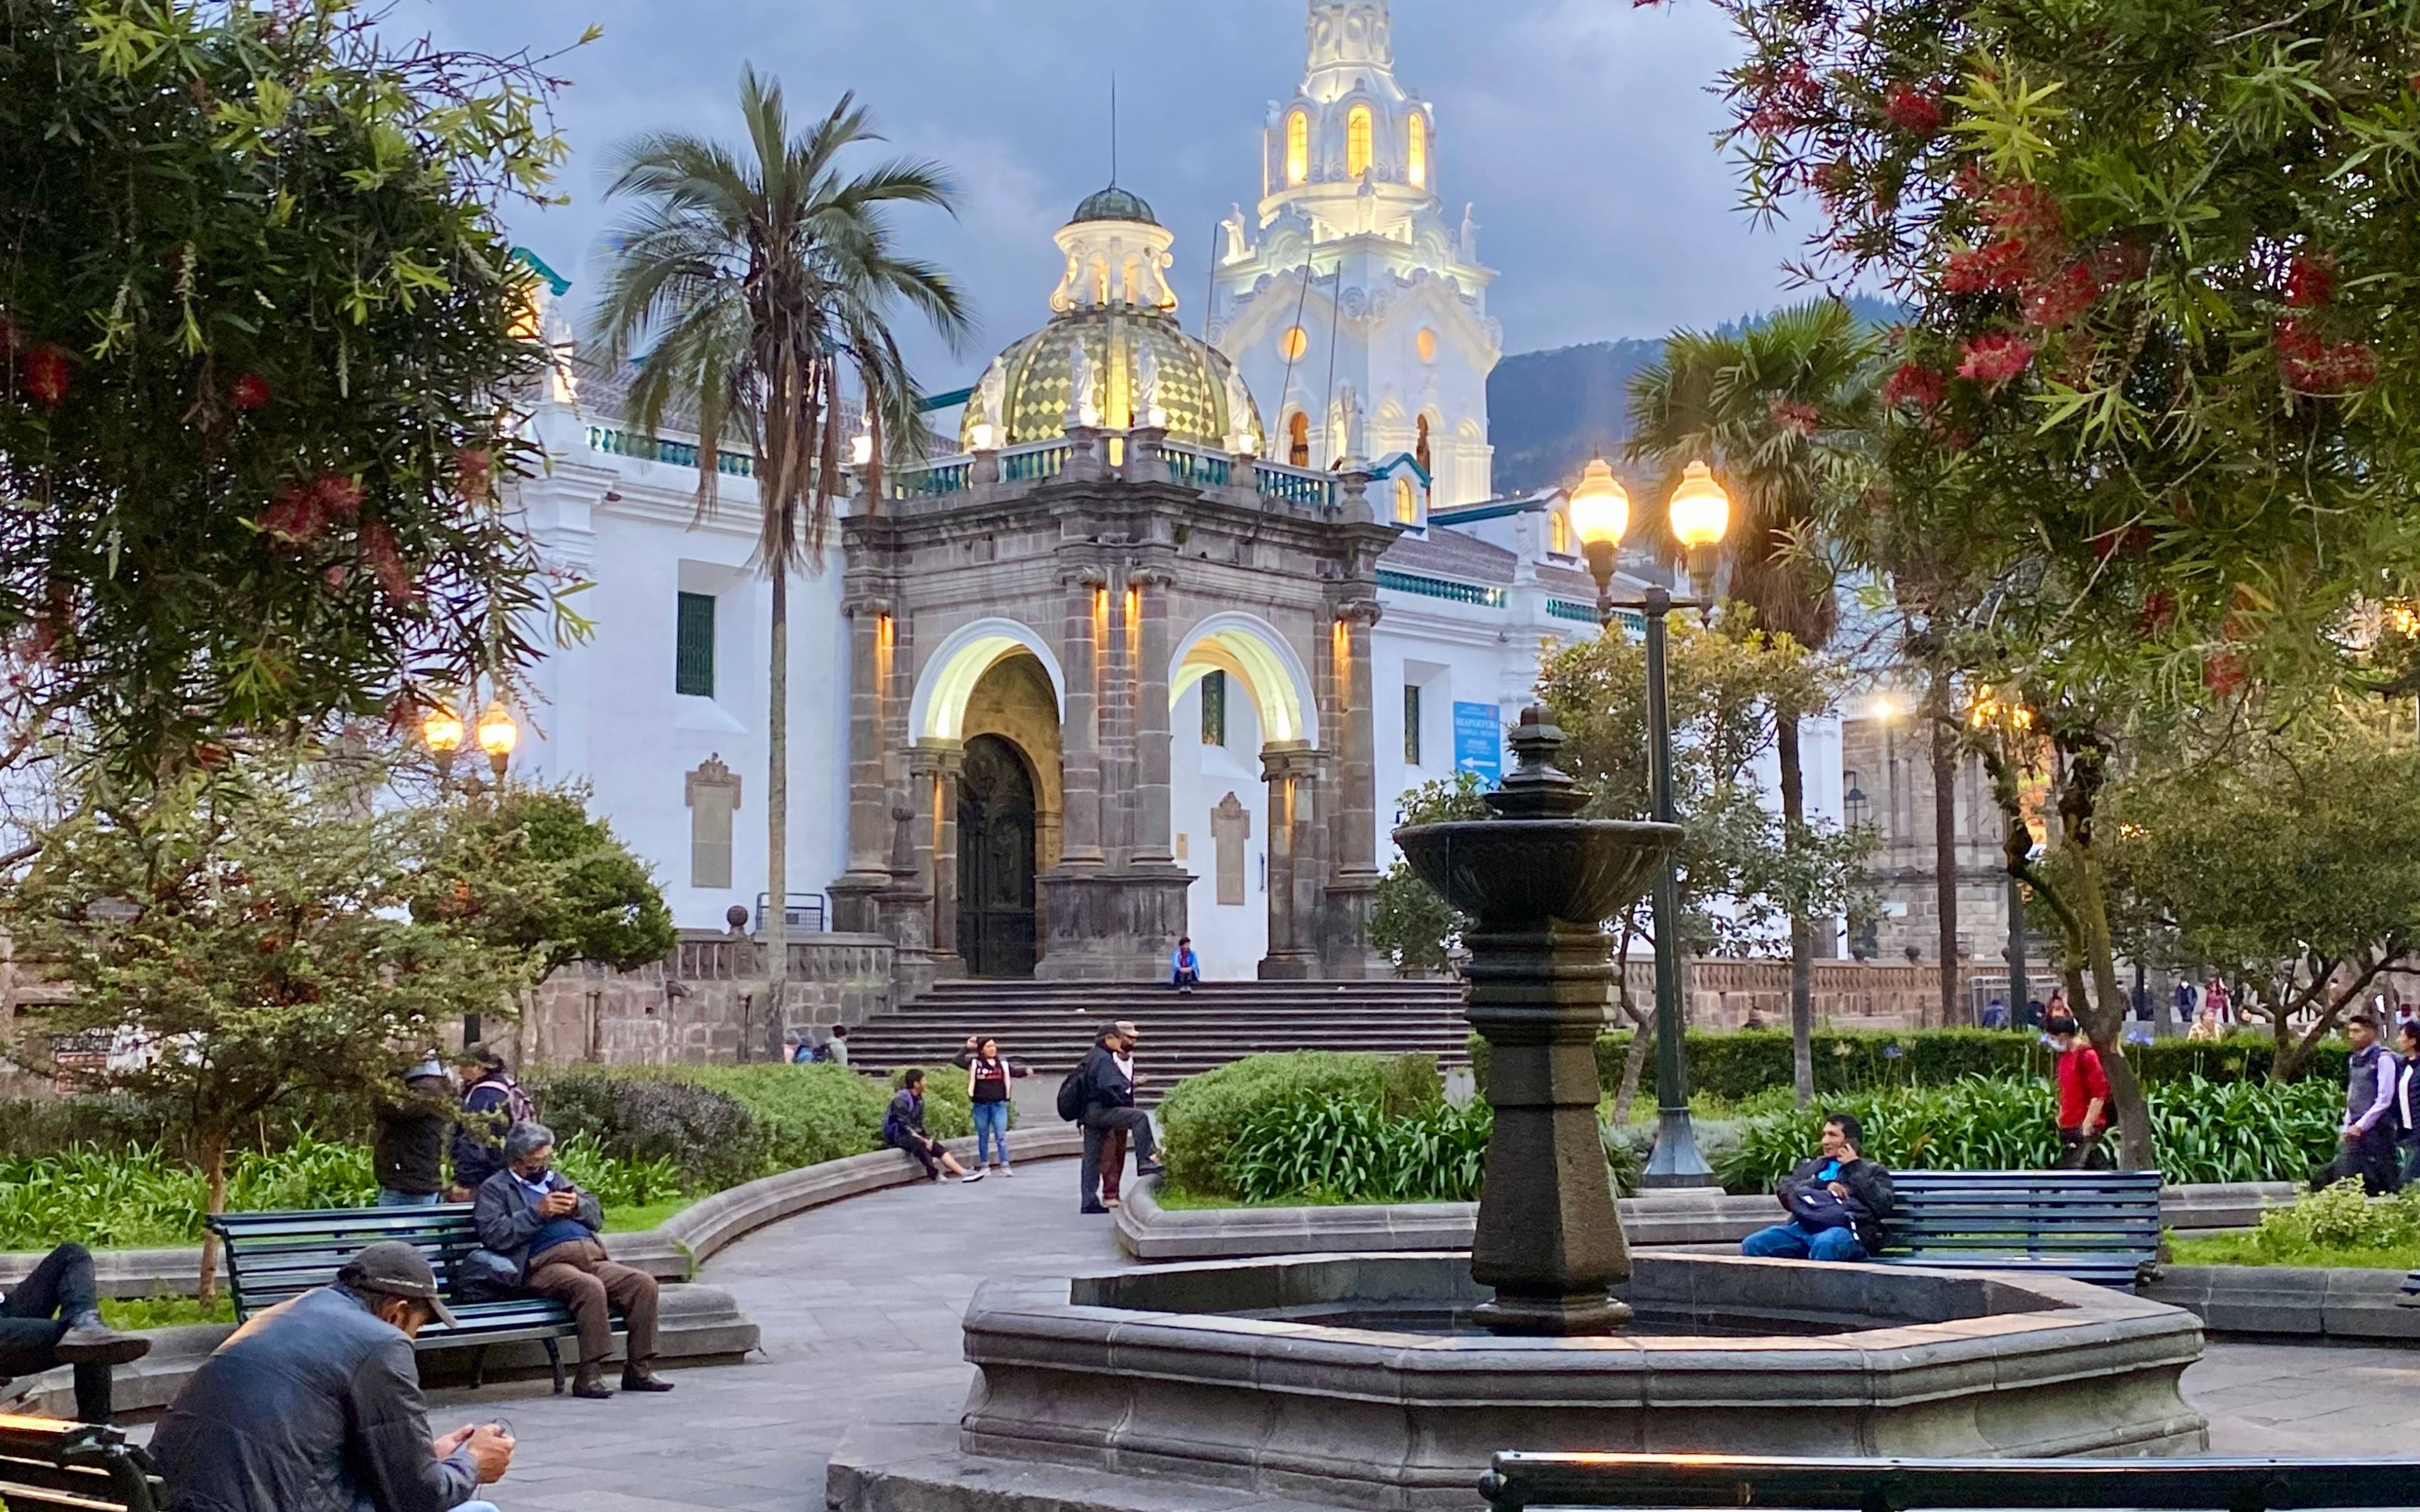 Ankunft in Quito, die „Stadt des ewigen Frühlings“